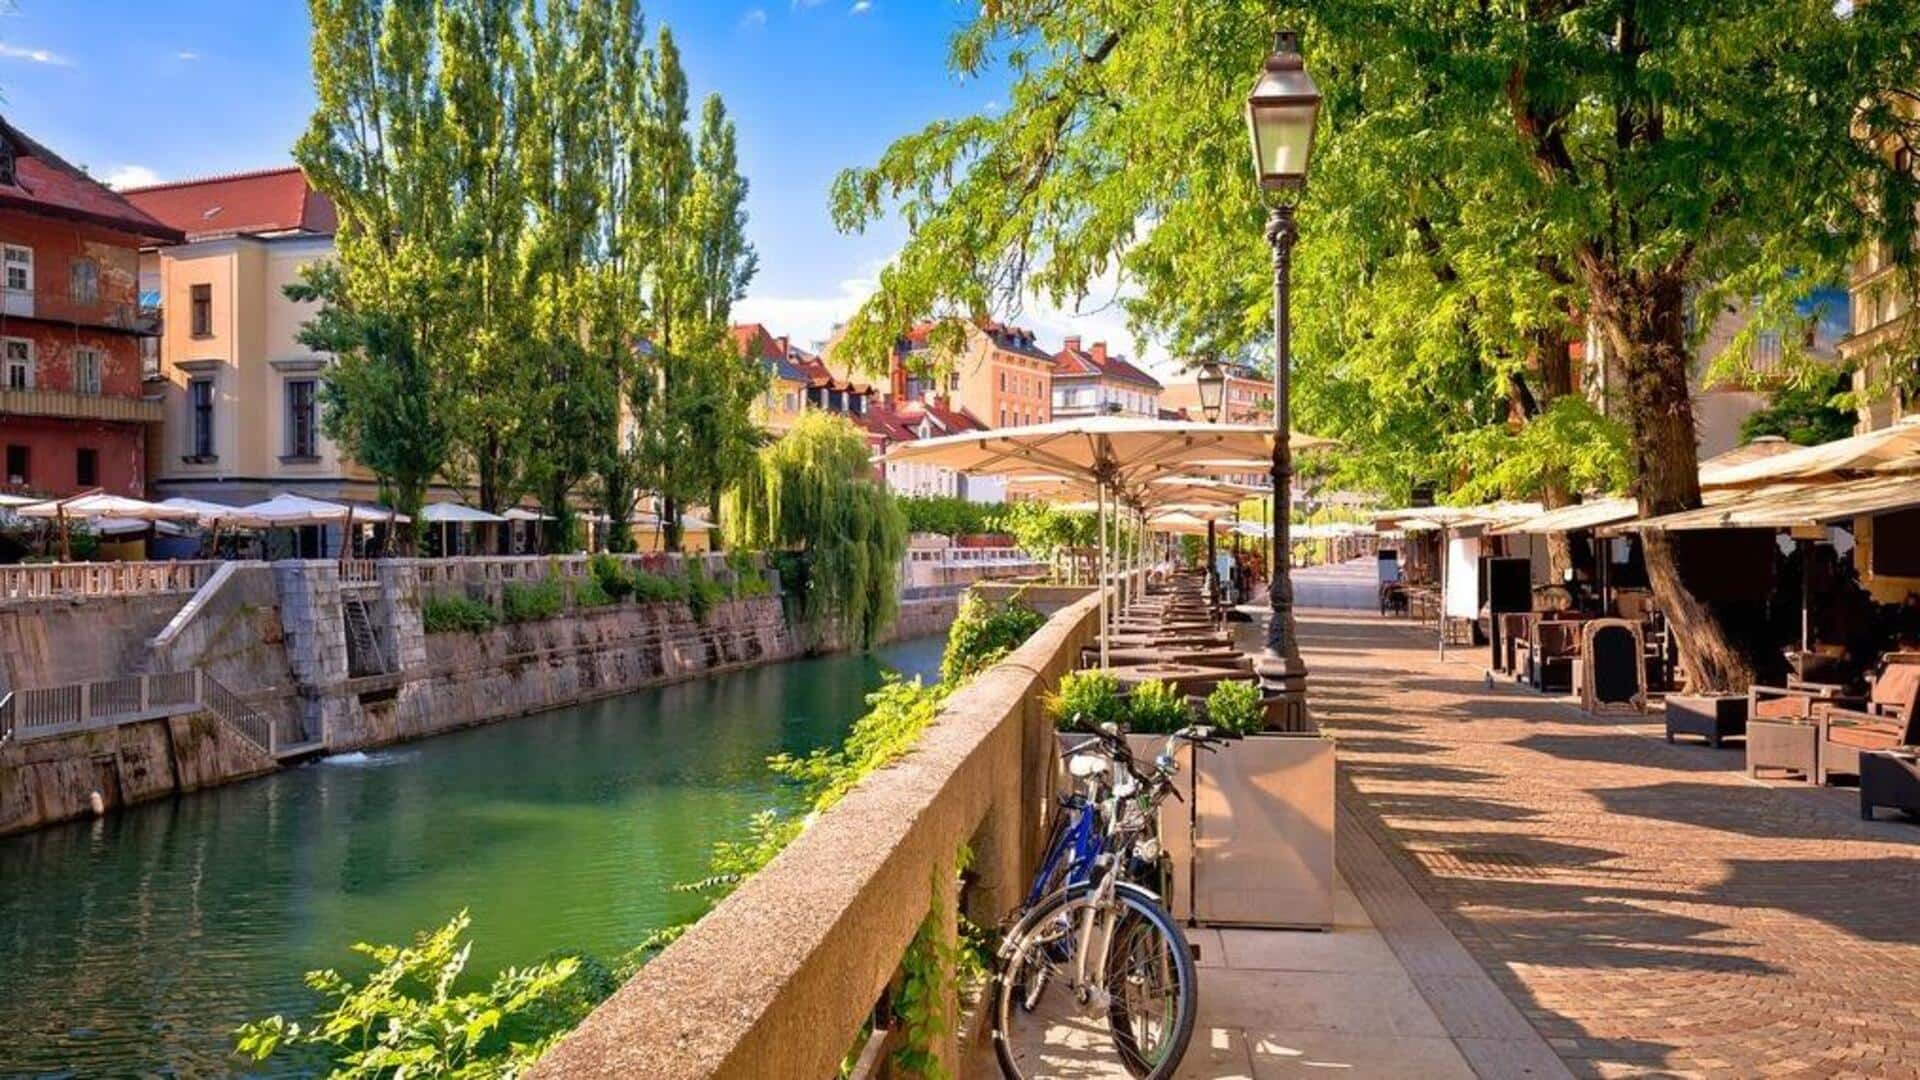 Explore Ljubljana's riverfront charms and secrets